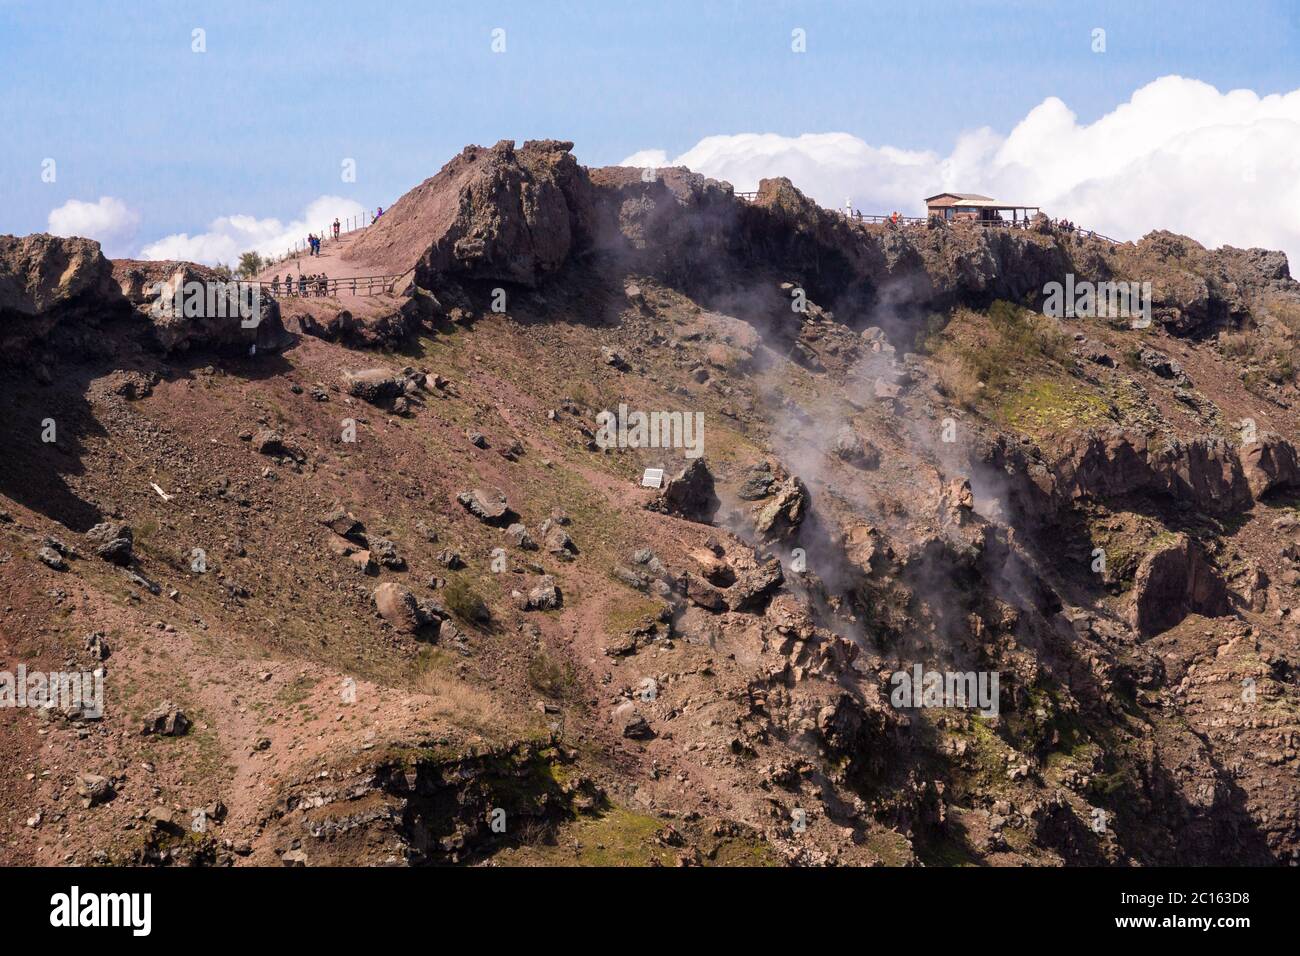 La fumée s'élève de l'intérieur du cône au sommet de la caldera du Mont Vésuve, un volcan actif (somma-stratovolcan), Campanie, Italie Banque D'Images